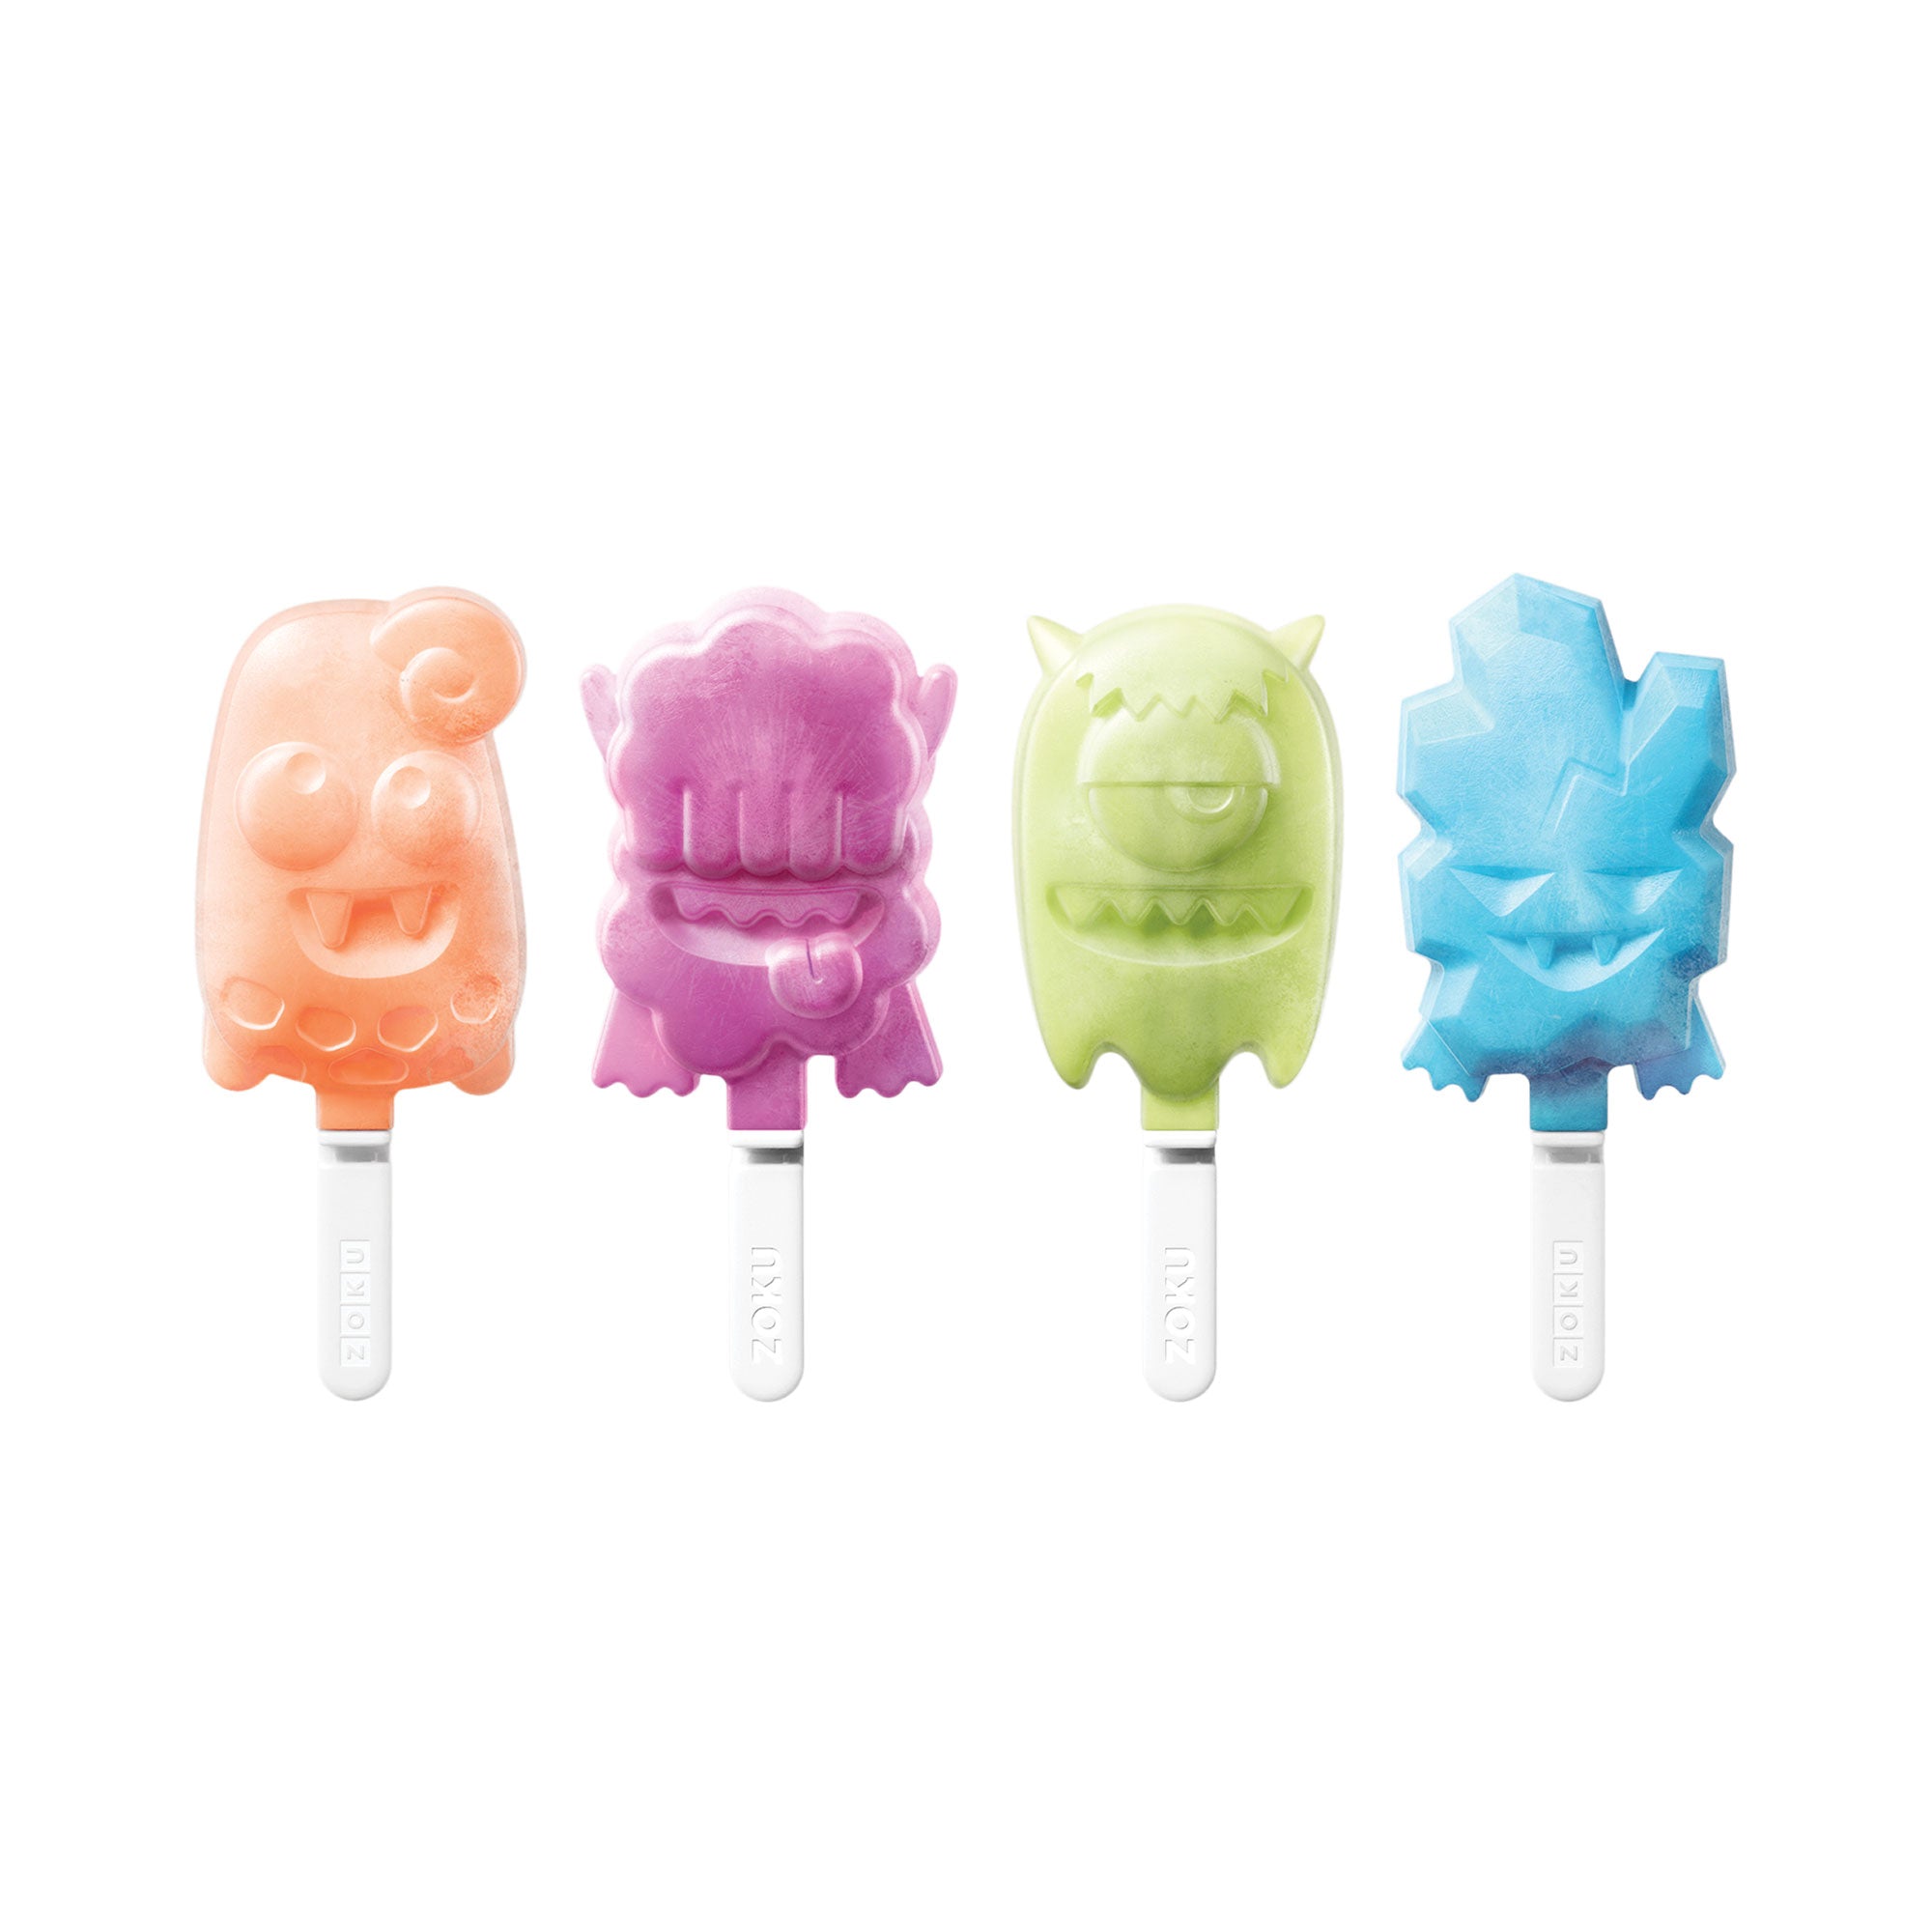 Zoku Unicorn Ice Pop Molds Review